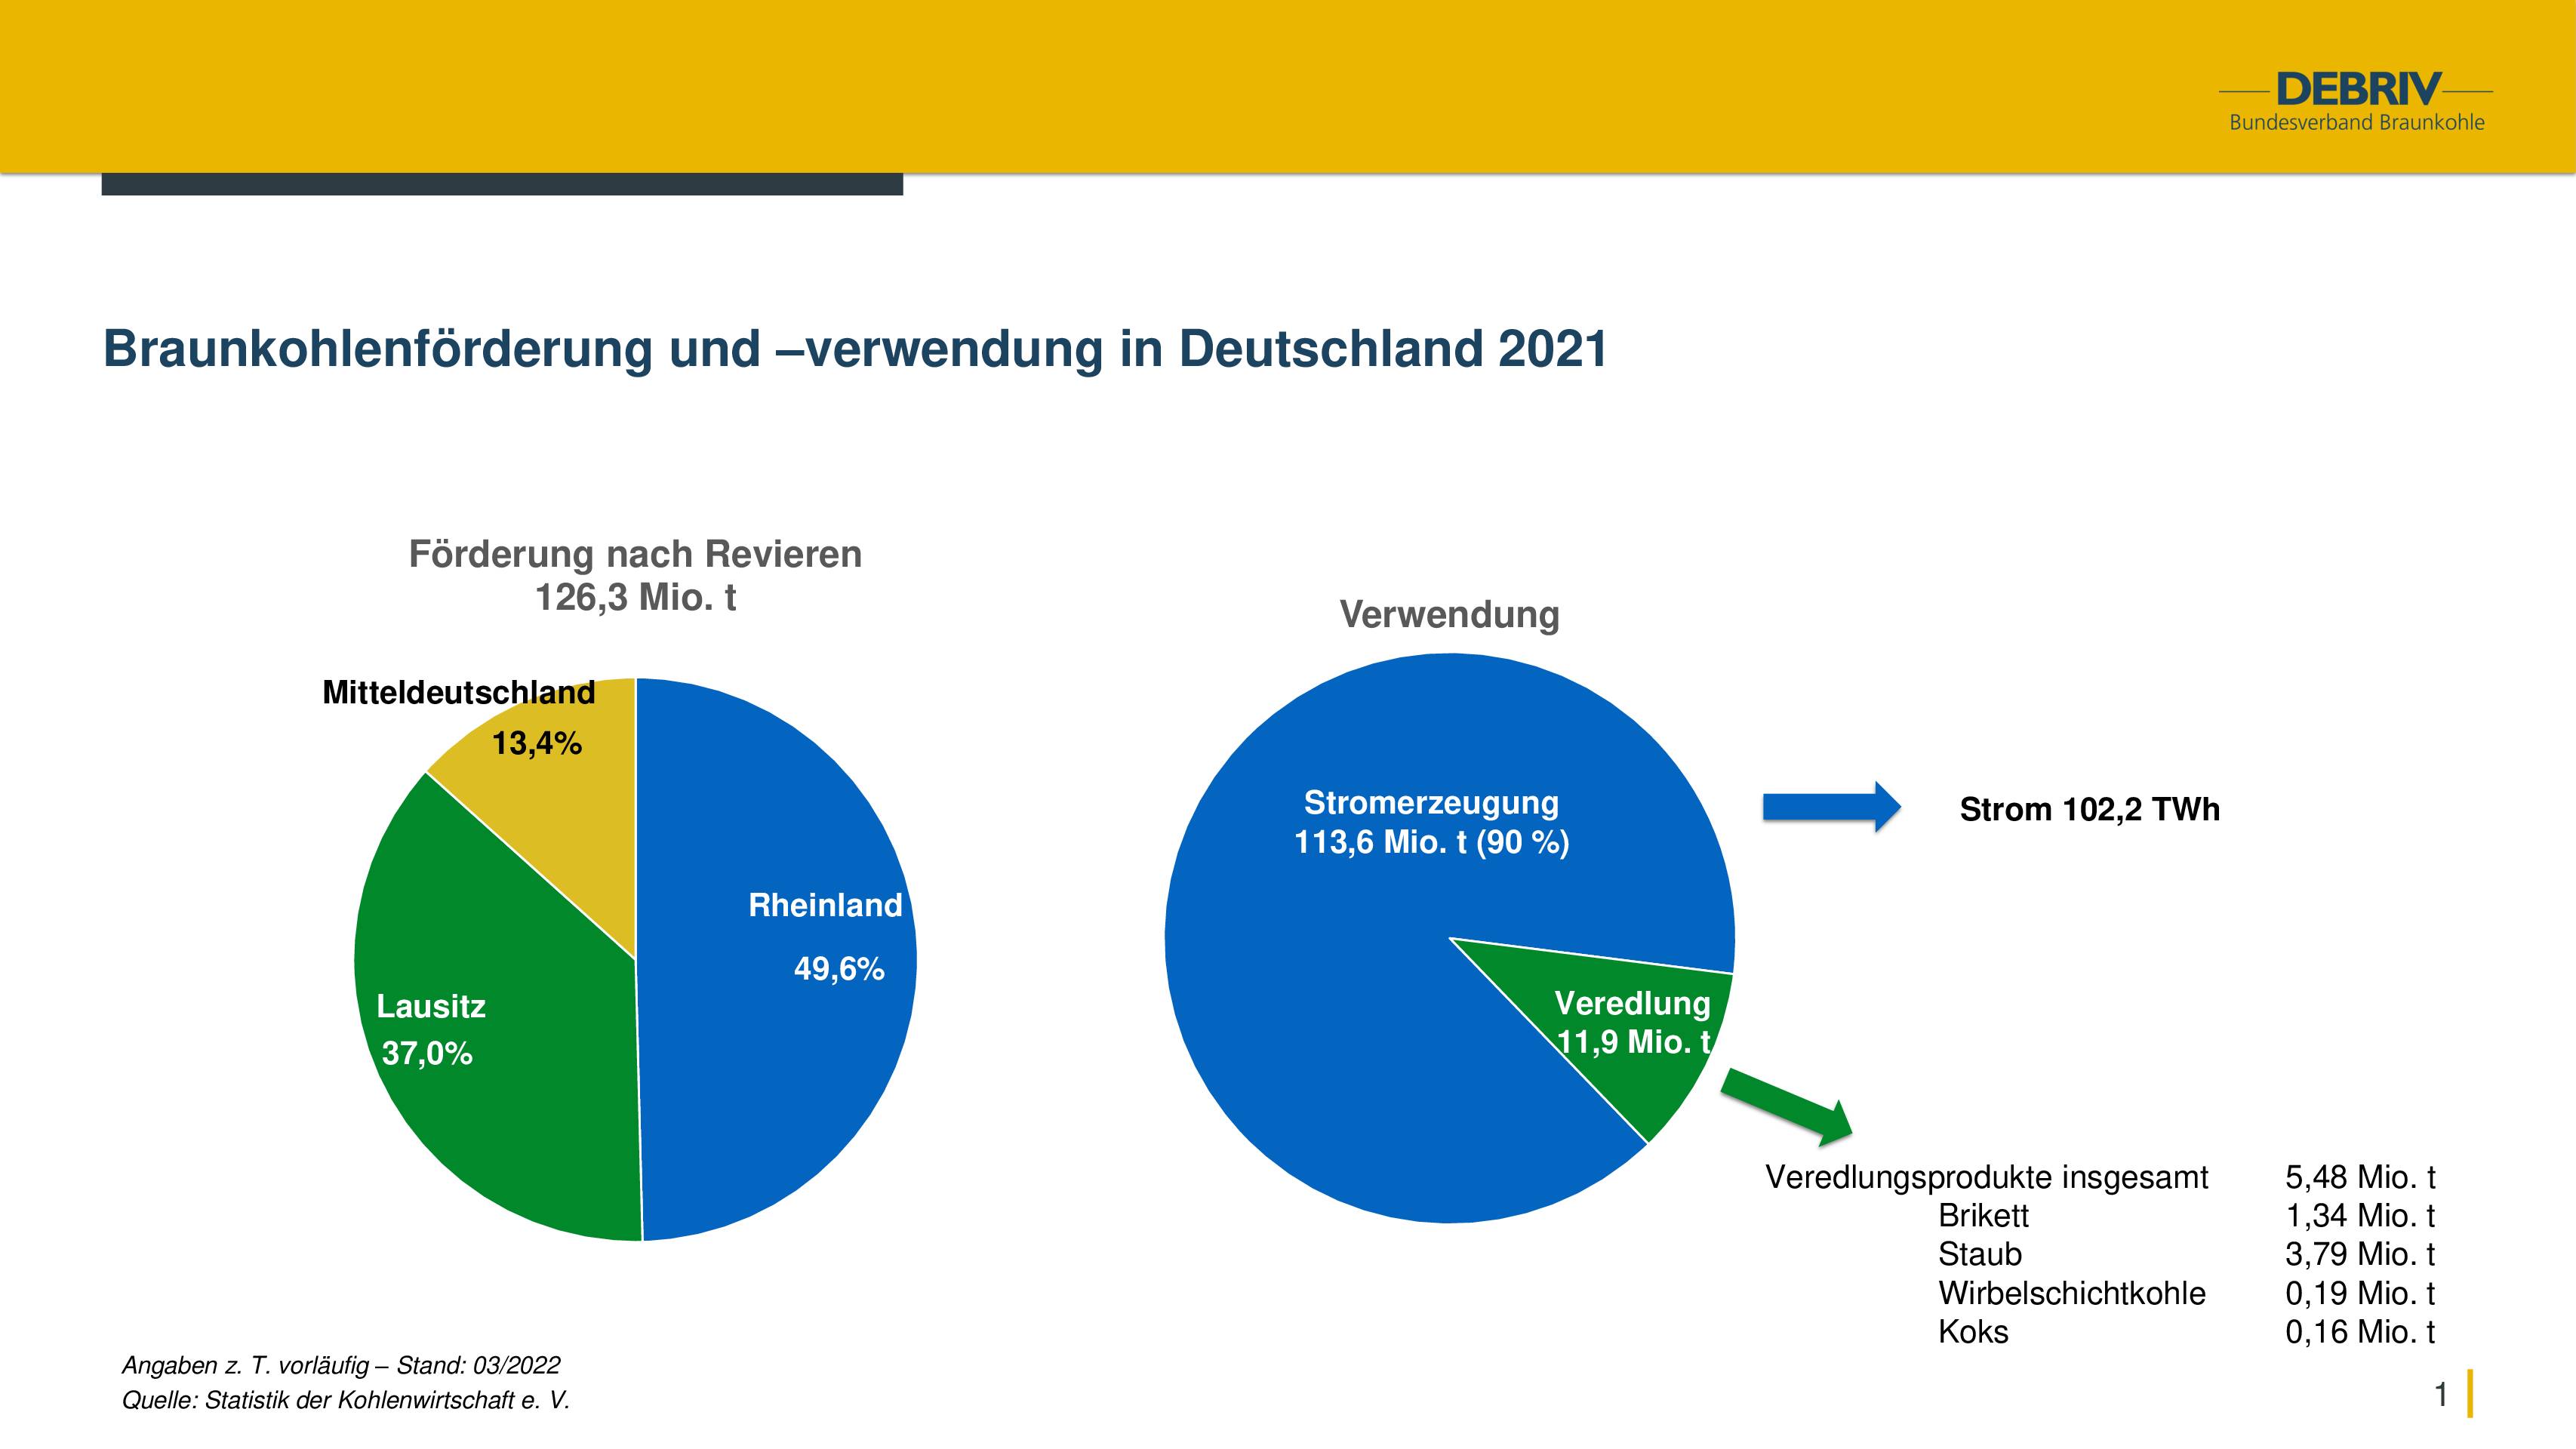 Braunkohlenförderung und -verwendung in Deutschland 2021 - DEBRIV  Bundesverband Braunkohle